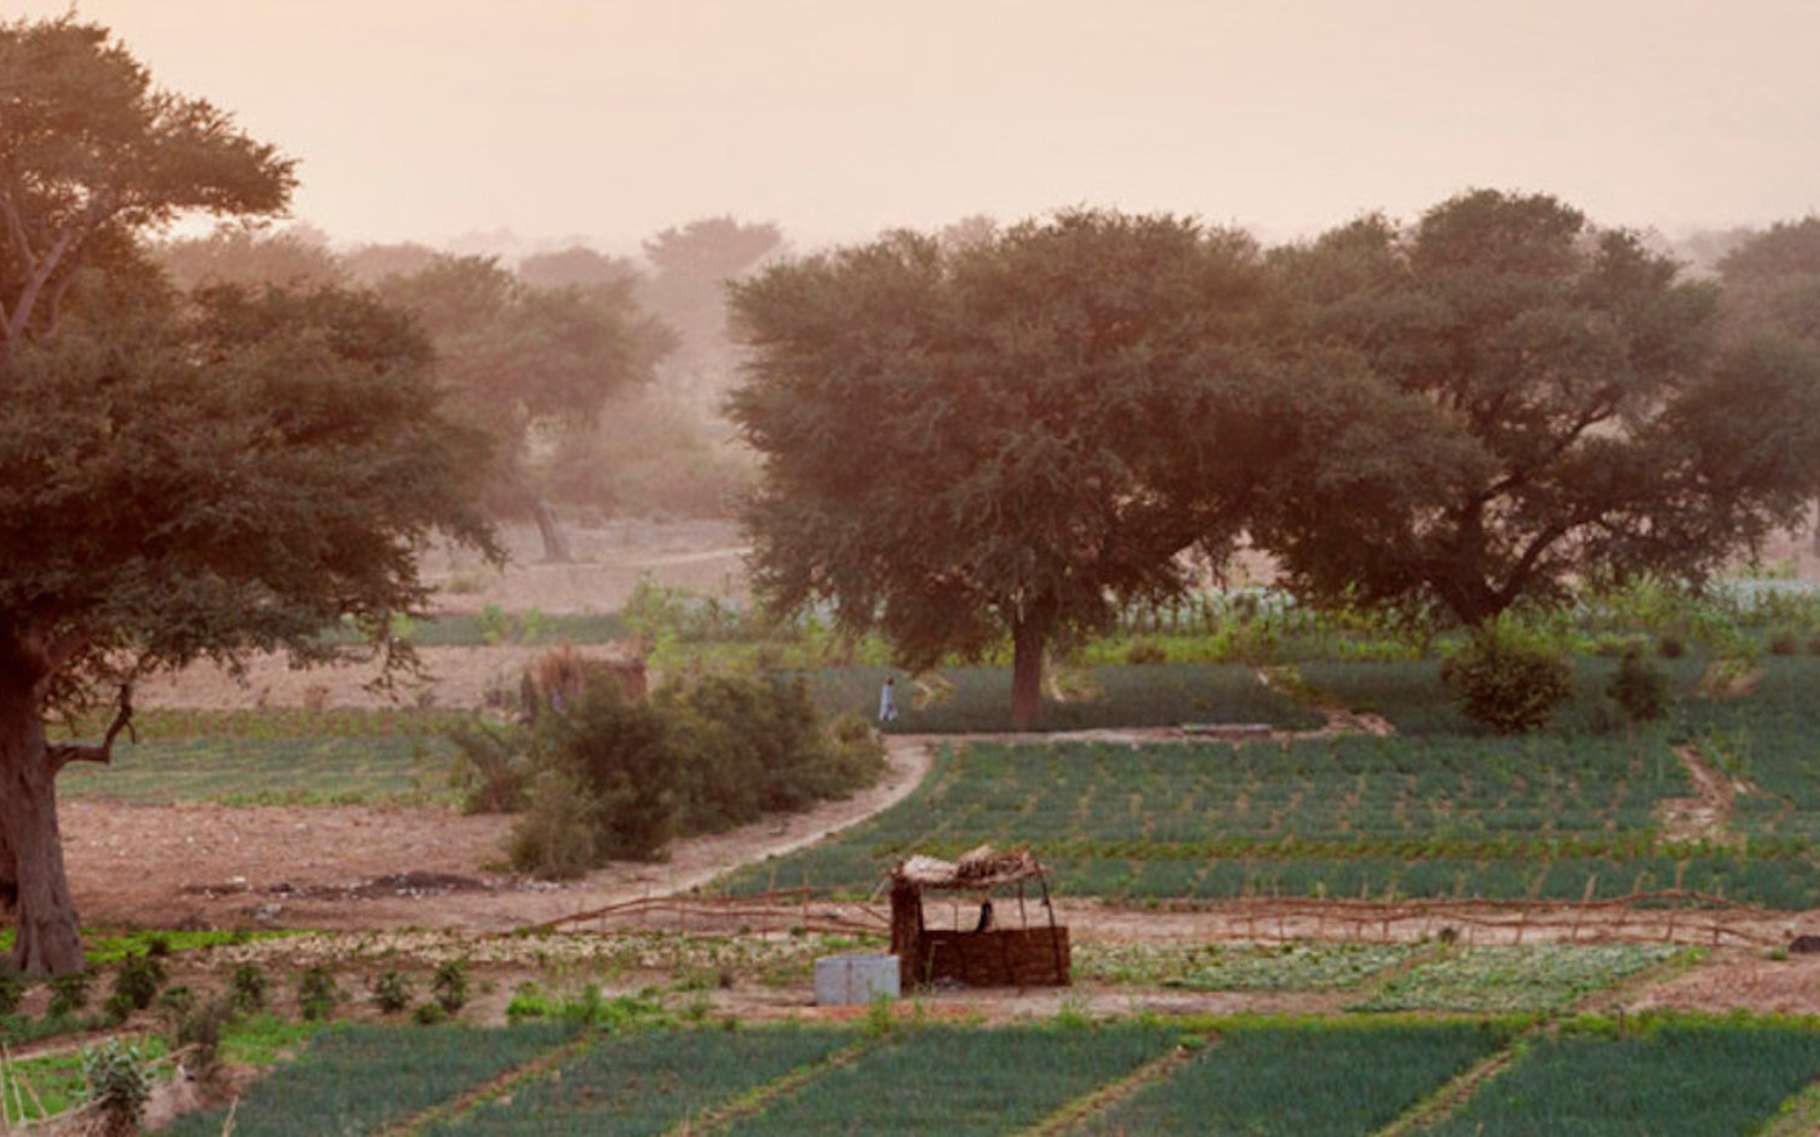 Dans le Sahel, le projet de Grande muraille verte s’accompagne de l’installation de terres agricoles qui participent à la gestion durable des régions désertiques. © Giulio Napolitano, Organisation des Nations unies pour l’alimentation et l’agriculture